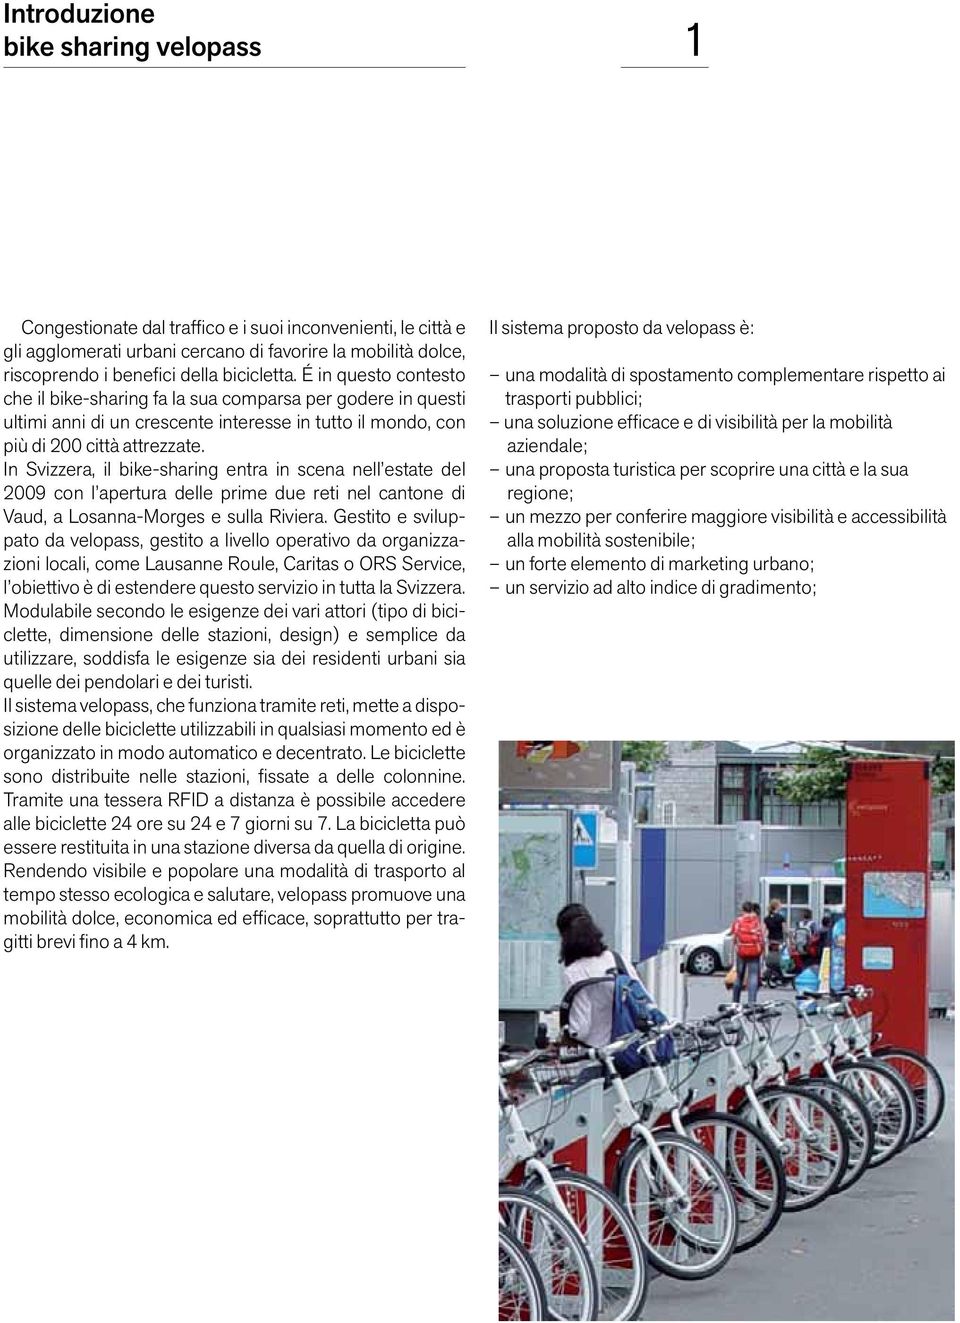 In Svizzera, il bike-sharing entra in scena nell estate del 2009 con l apertura delle prime due reti nel cantone di Vaud, a Losanna-Morges e sulla Riviera.